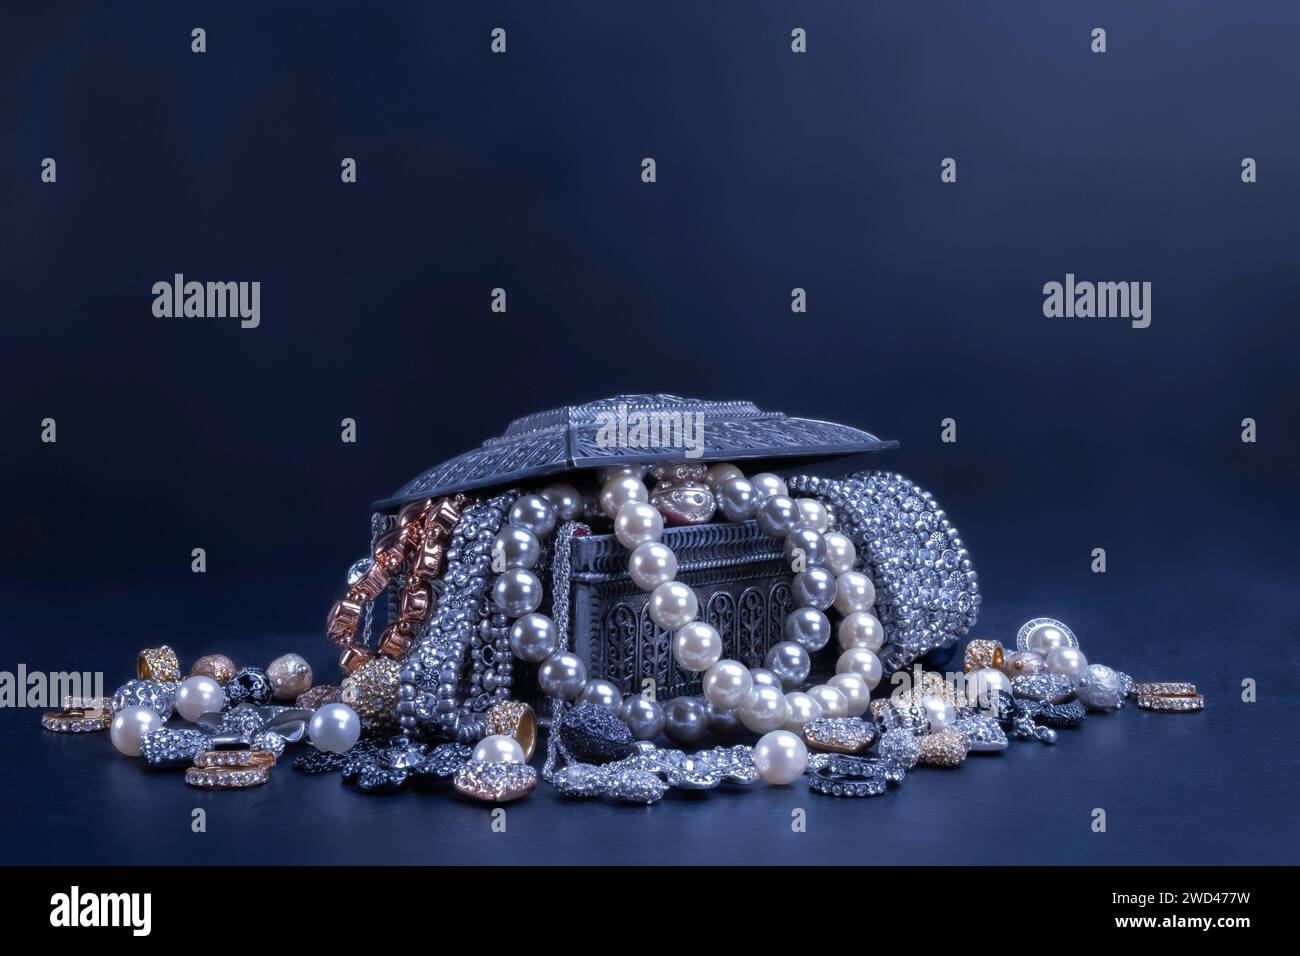 Vari gioielli perle oro e argento in una scatola argentata su sfondo nero. Bracciali, orecchini, collane, moda, accessori, concetto di gioielleria. Foto Stock